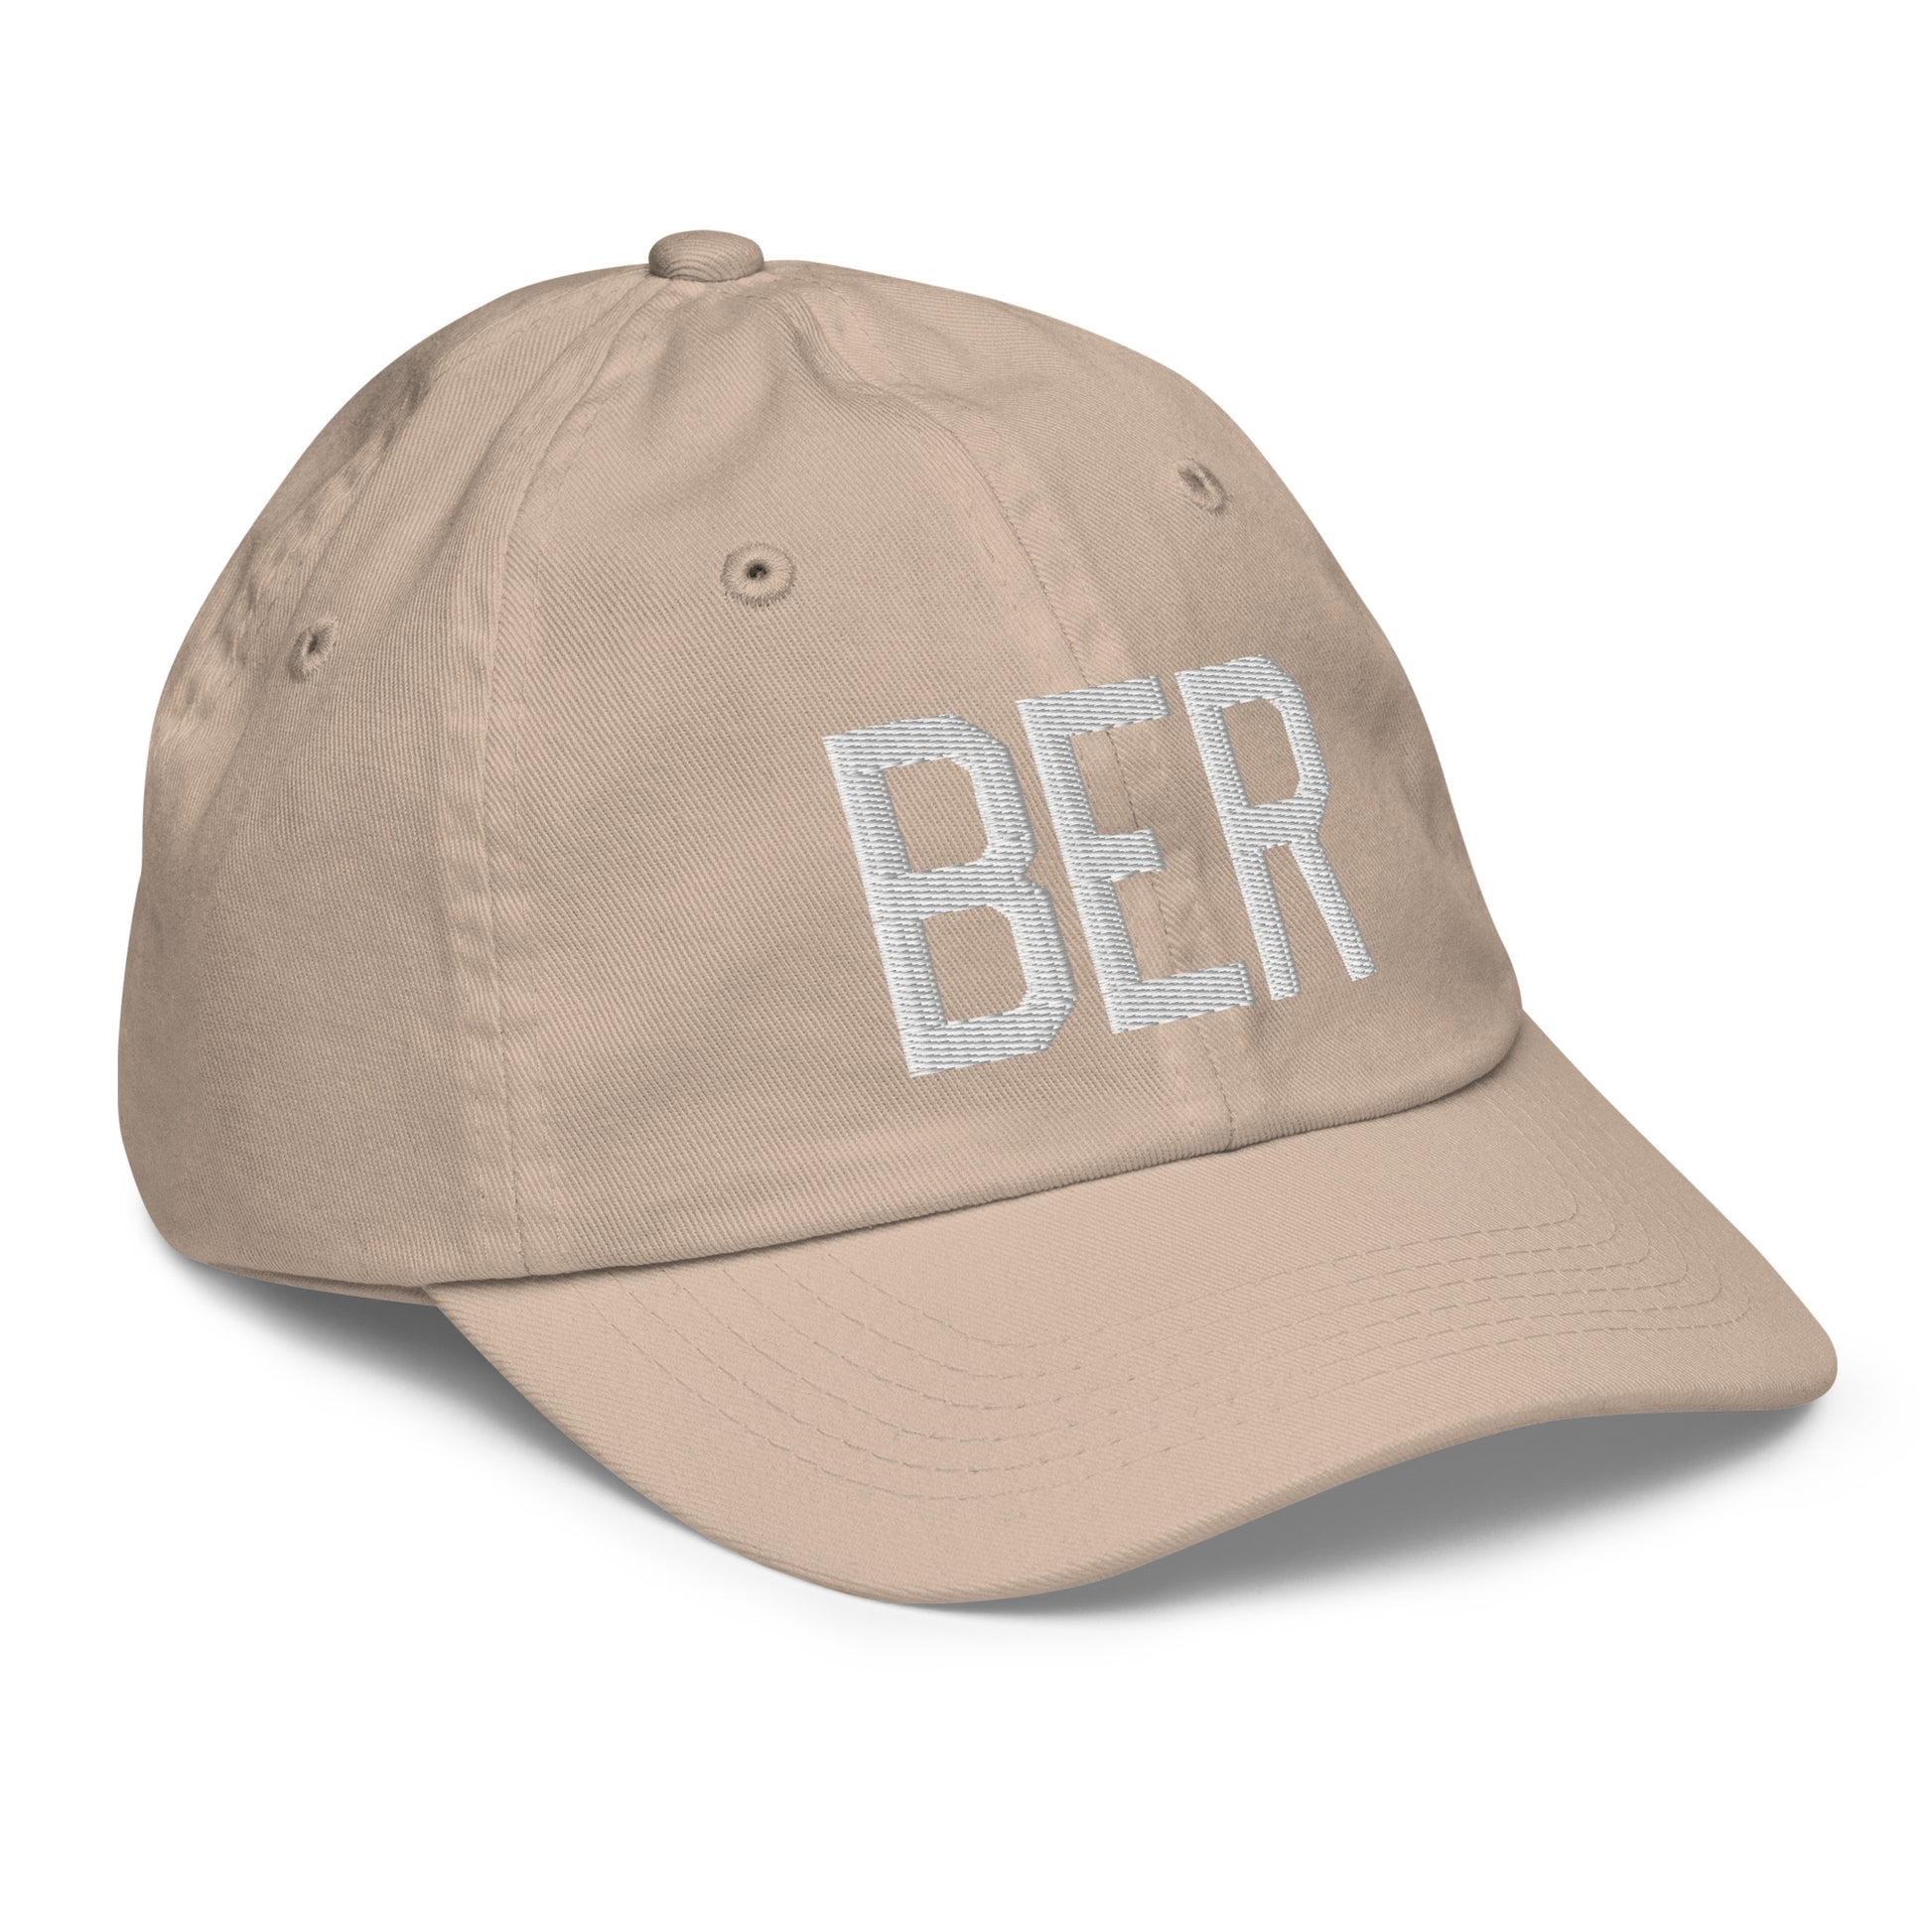 Airport Code Kid's Baseball Cap - White • BER Berlin • YHM Designs - Image 29